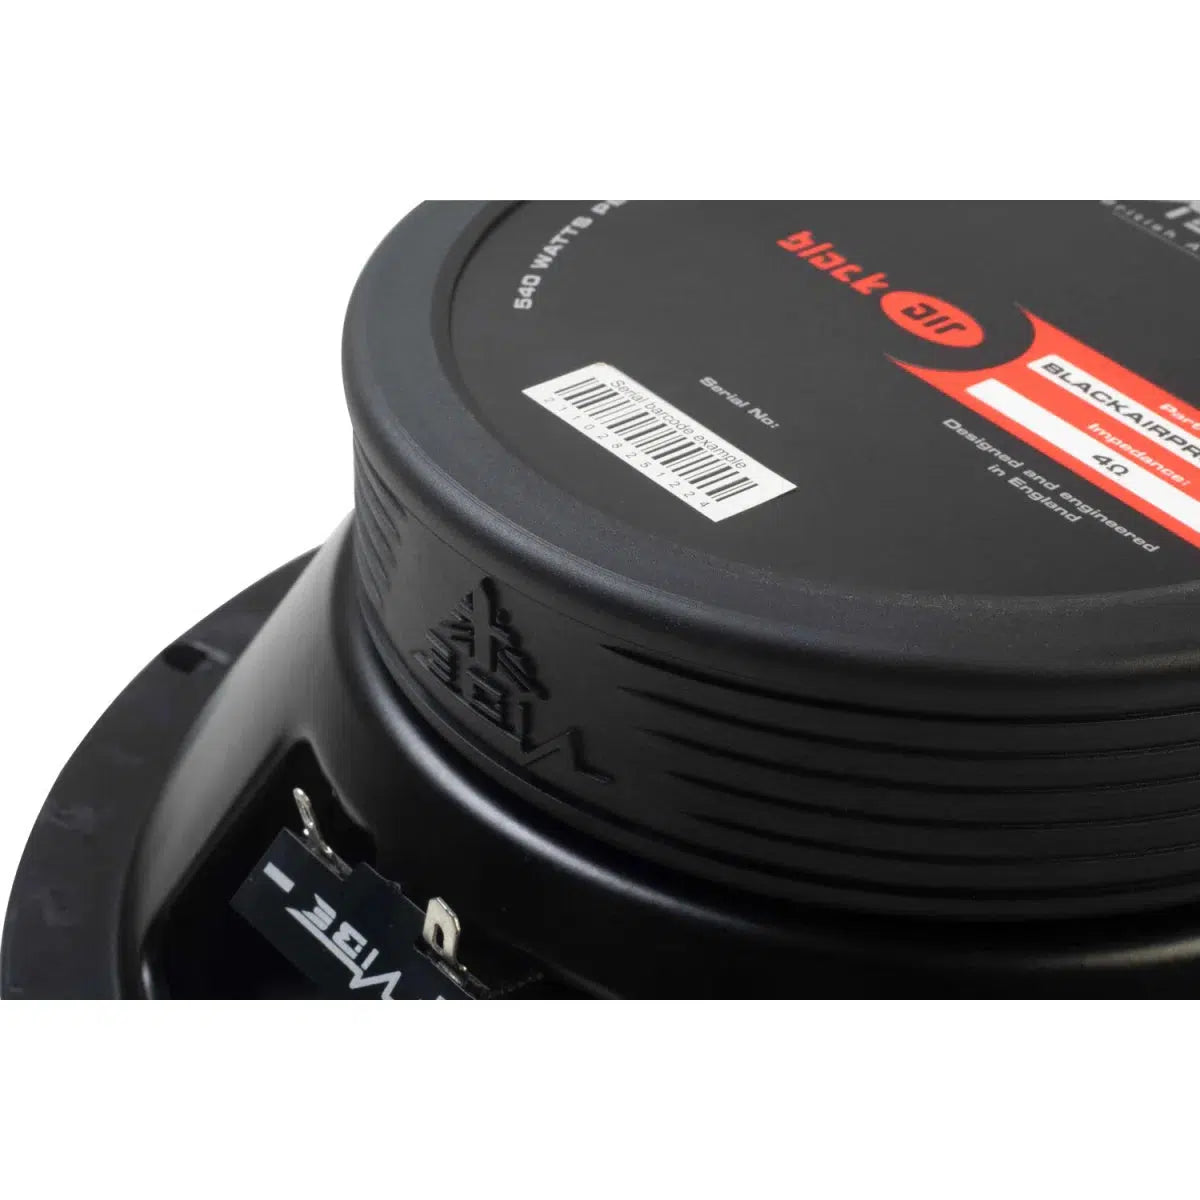 Vibe Audio-Blackair Pro 8M-V0-8" (20cm) Haut-parleur de grave-médium-Masori.fr